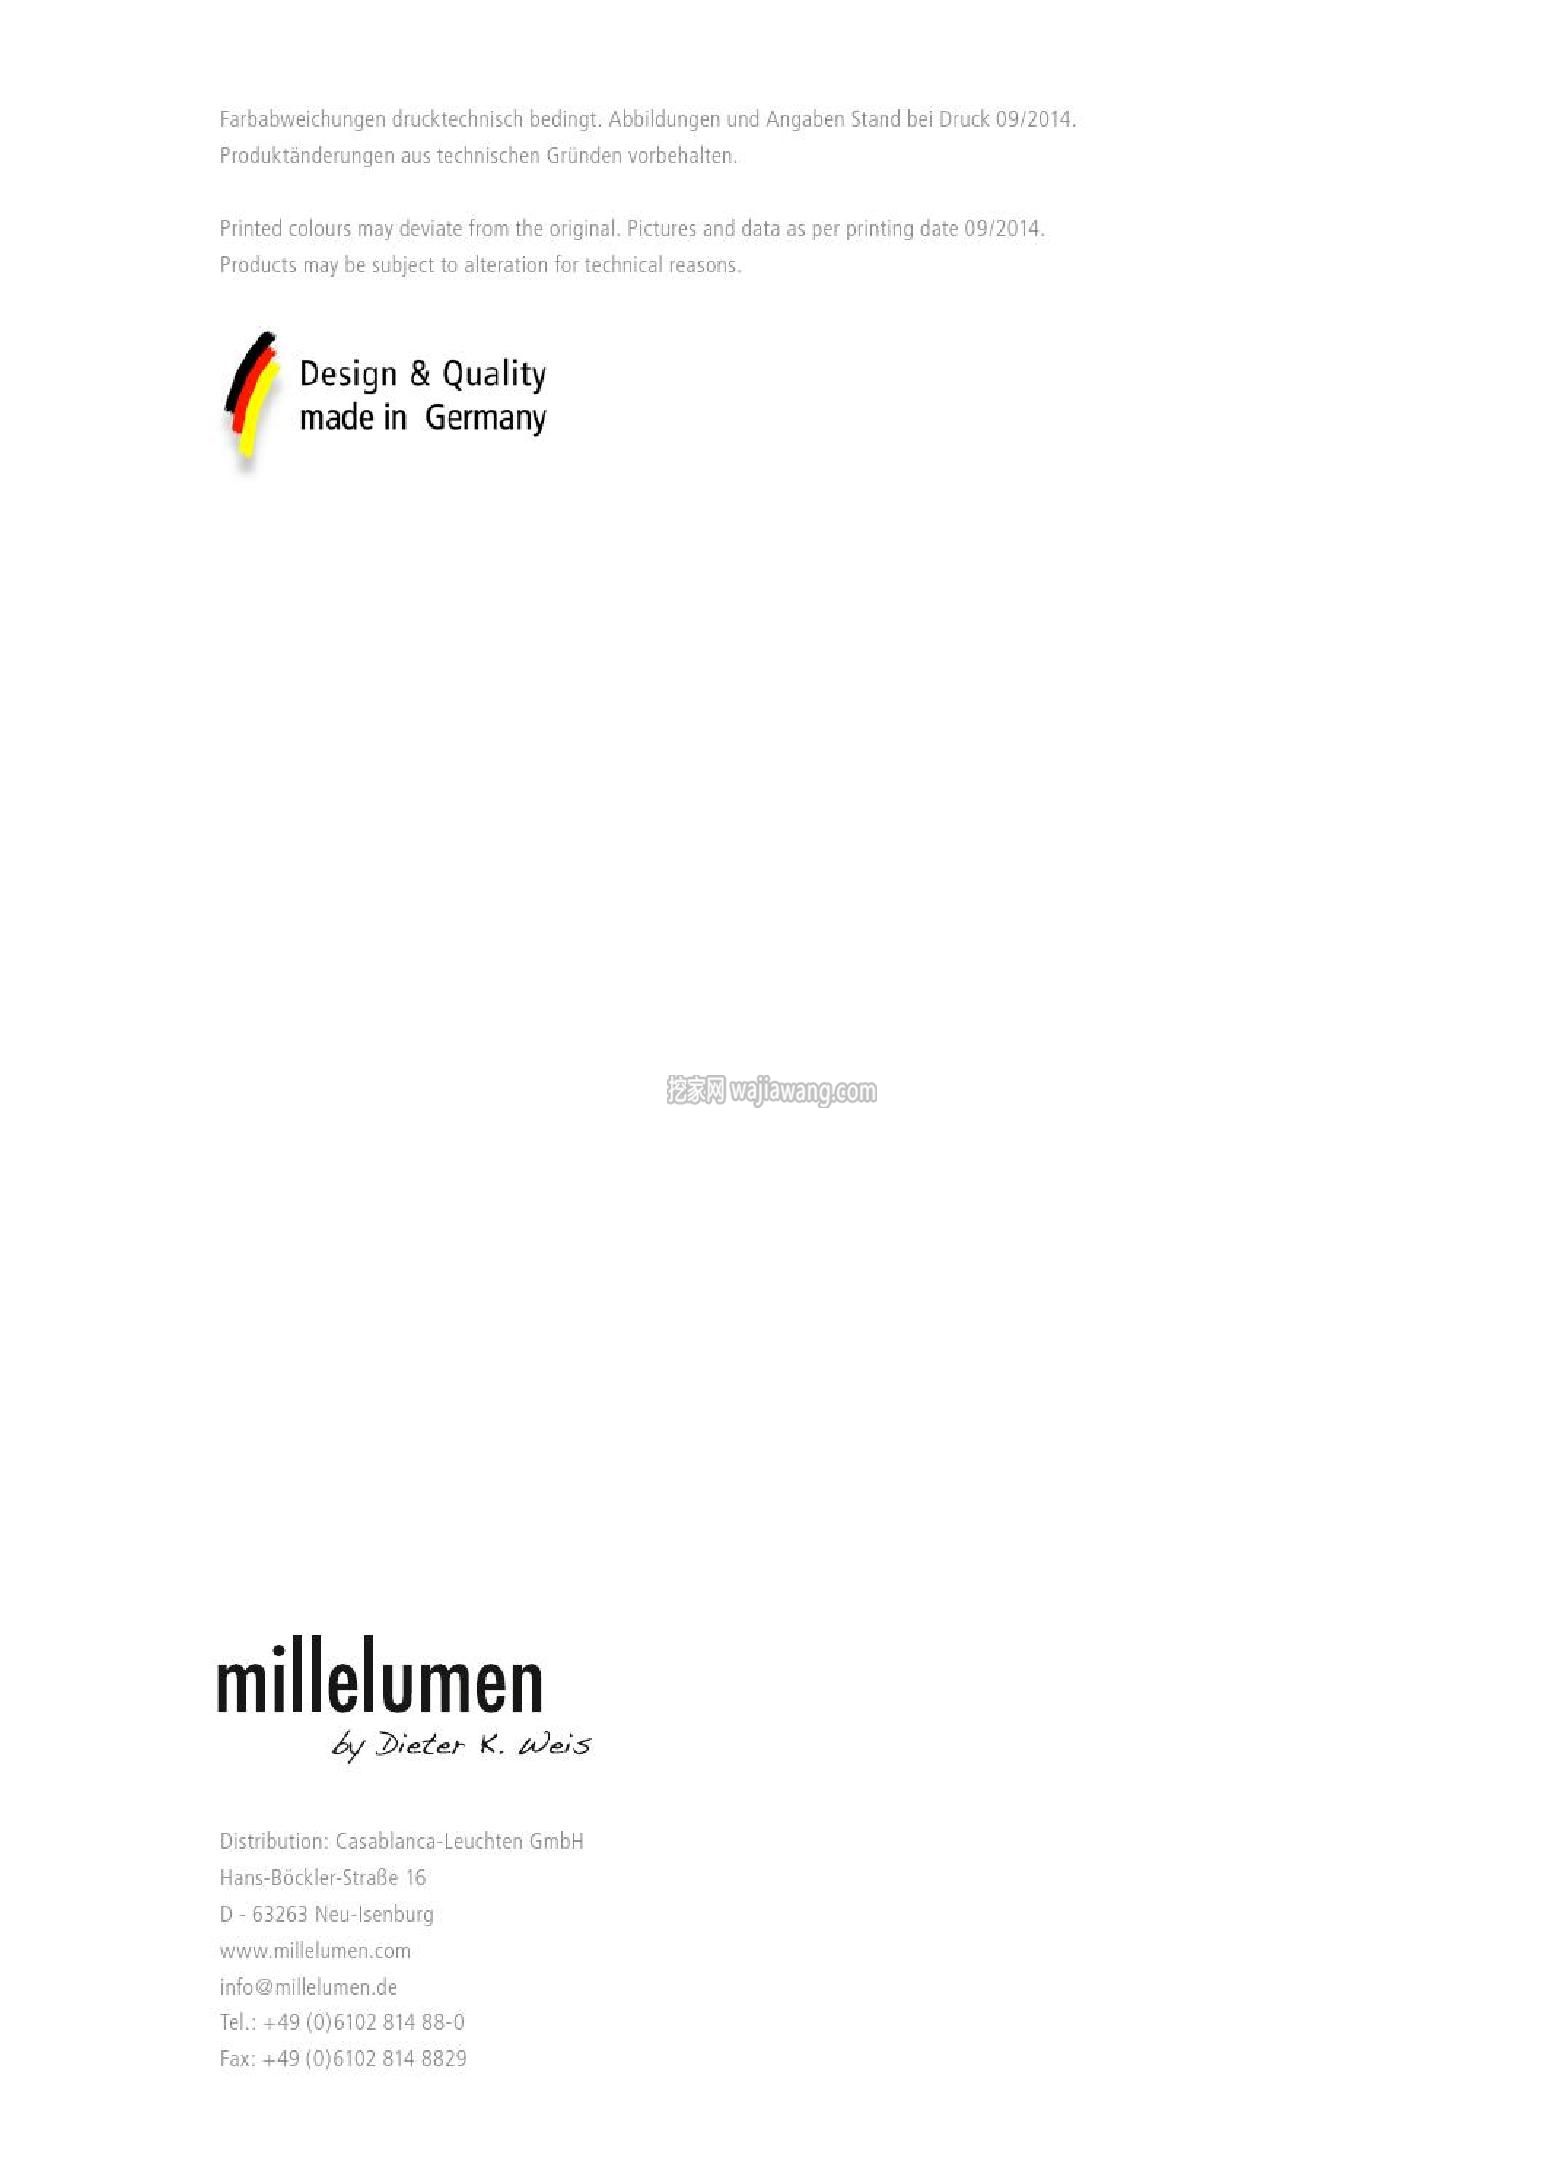 灯饰设计 Millelumen 2015(图)